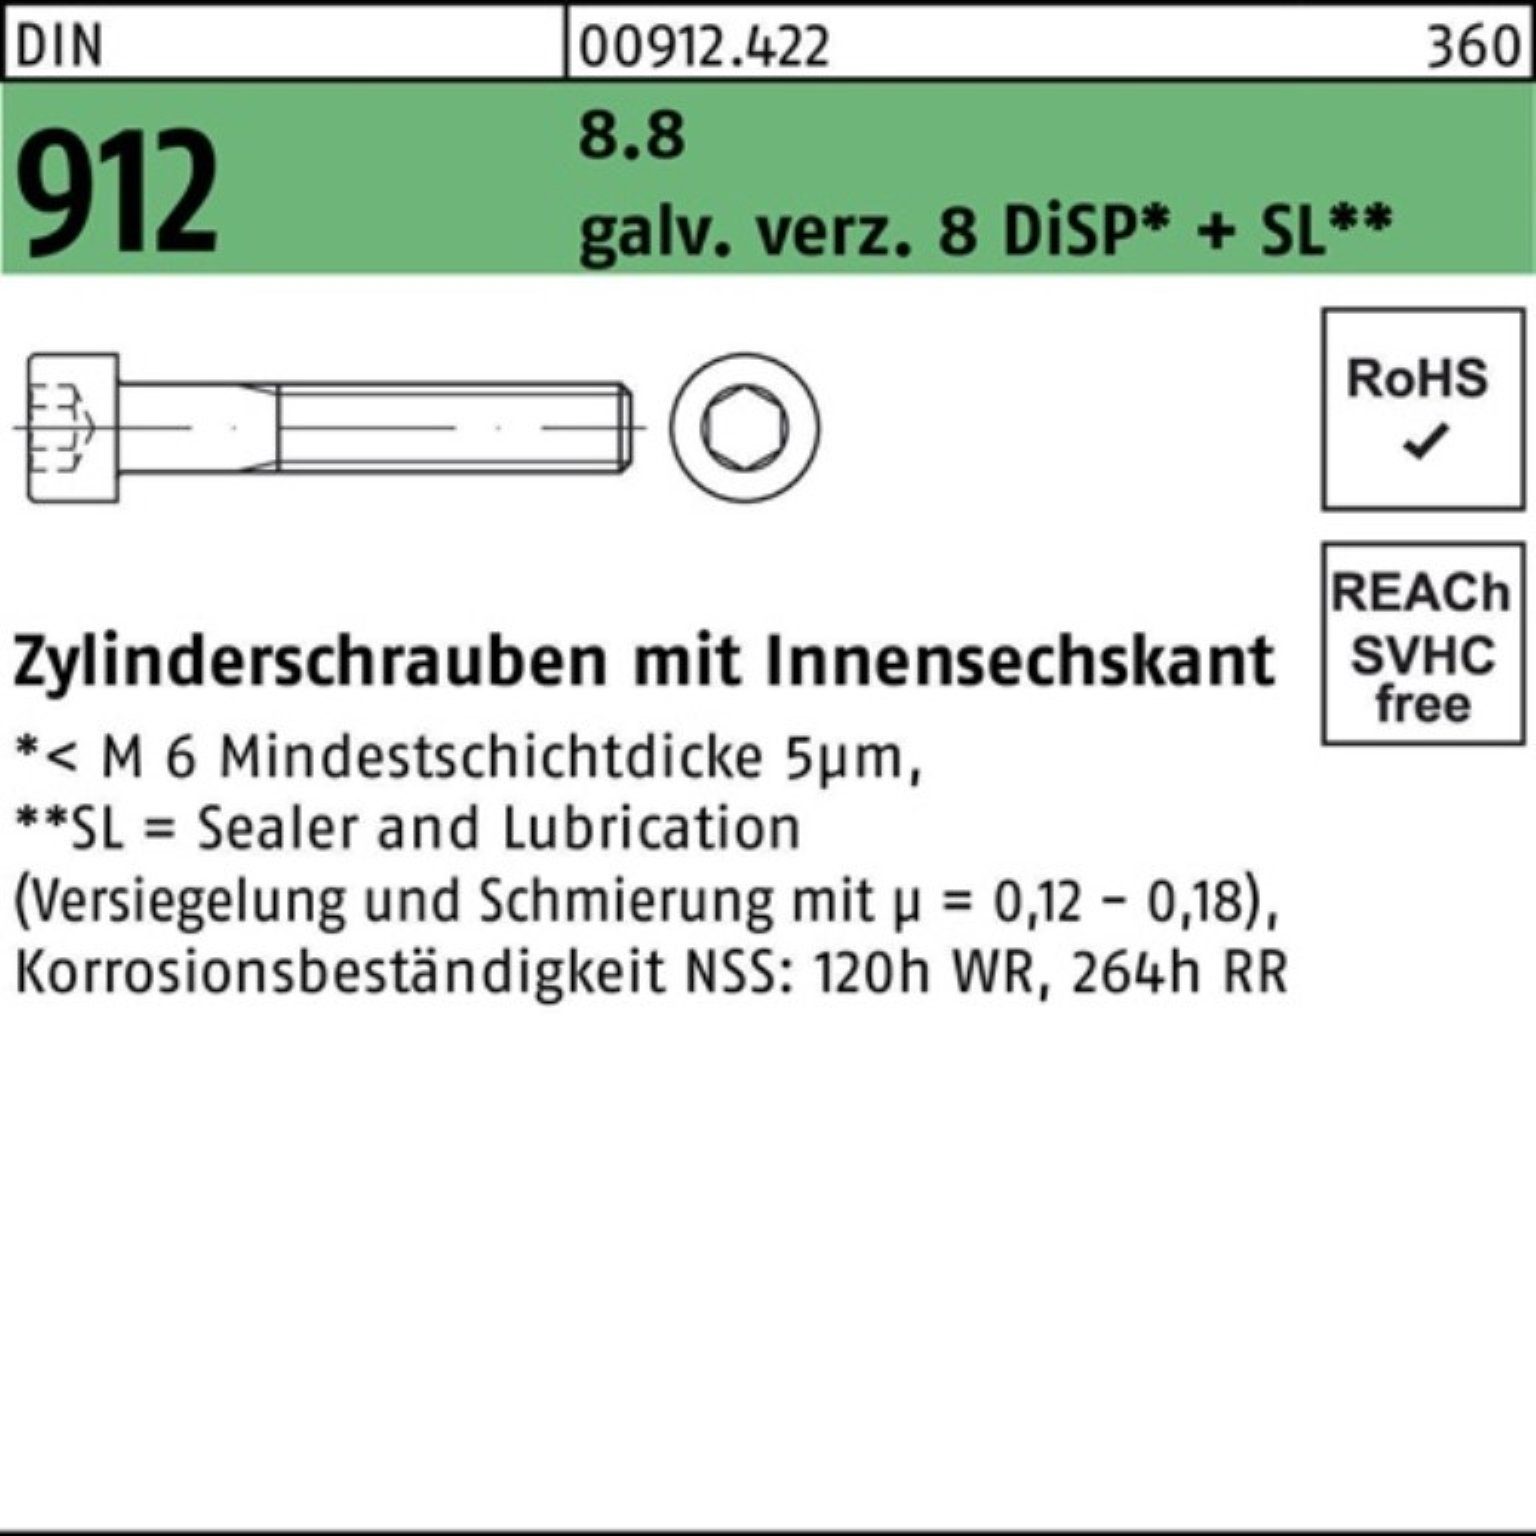 gal 912 Zylinderschraube Reyher DIN Pack Innen-6kt 200er 8.8 Zn 45 M6x 8 DiSP Zylinderschraube